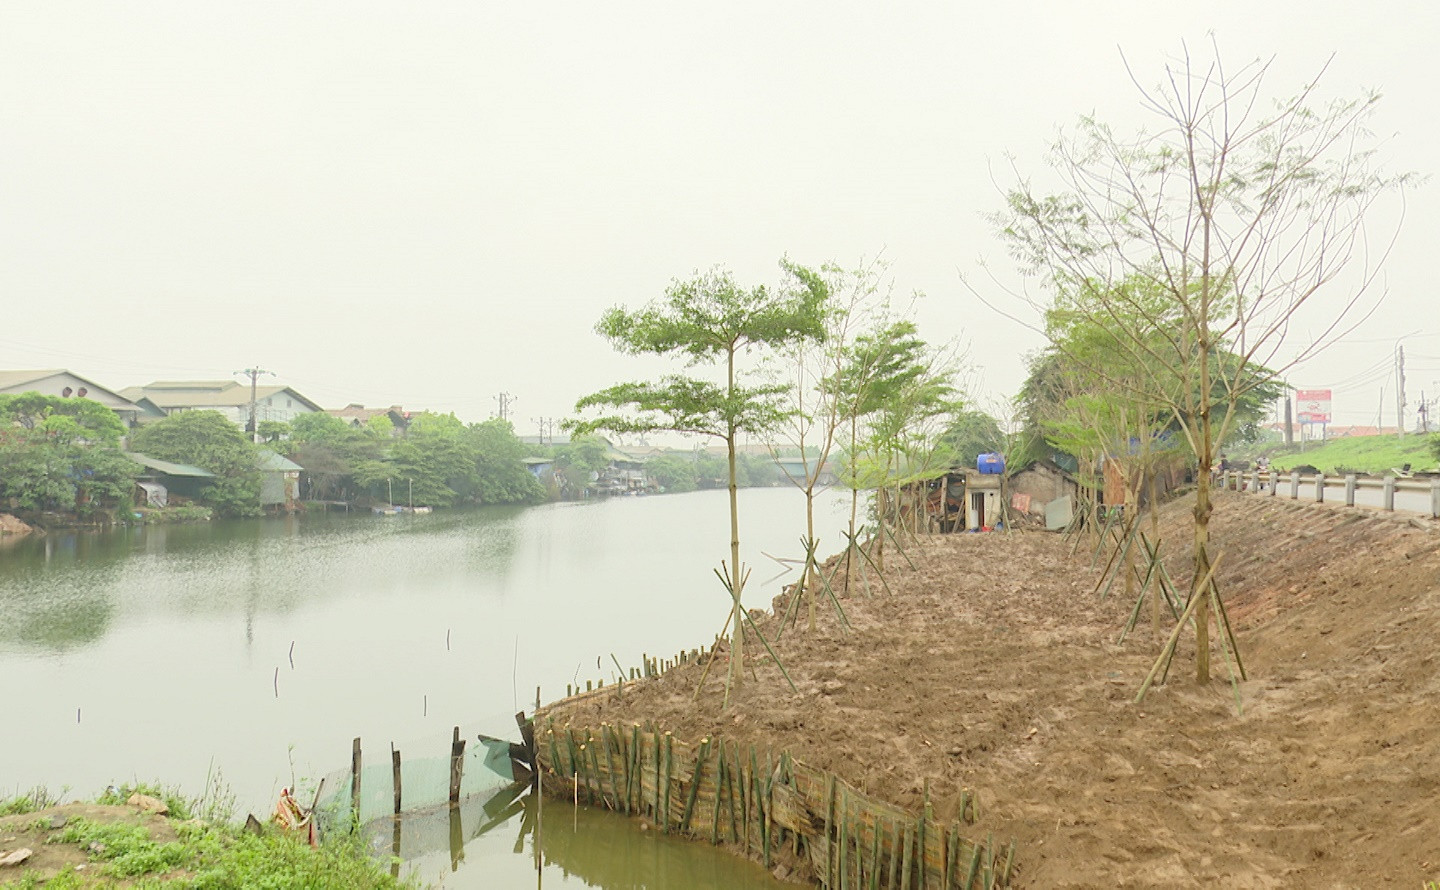 Đan Phượng - Hà Nội: Thu hồi đất xây dựng nhà xưởng trái phép để trồng cây xanh